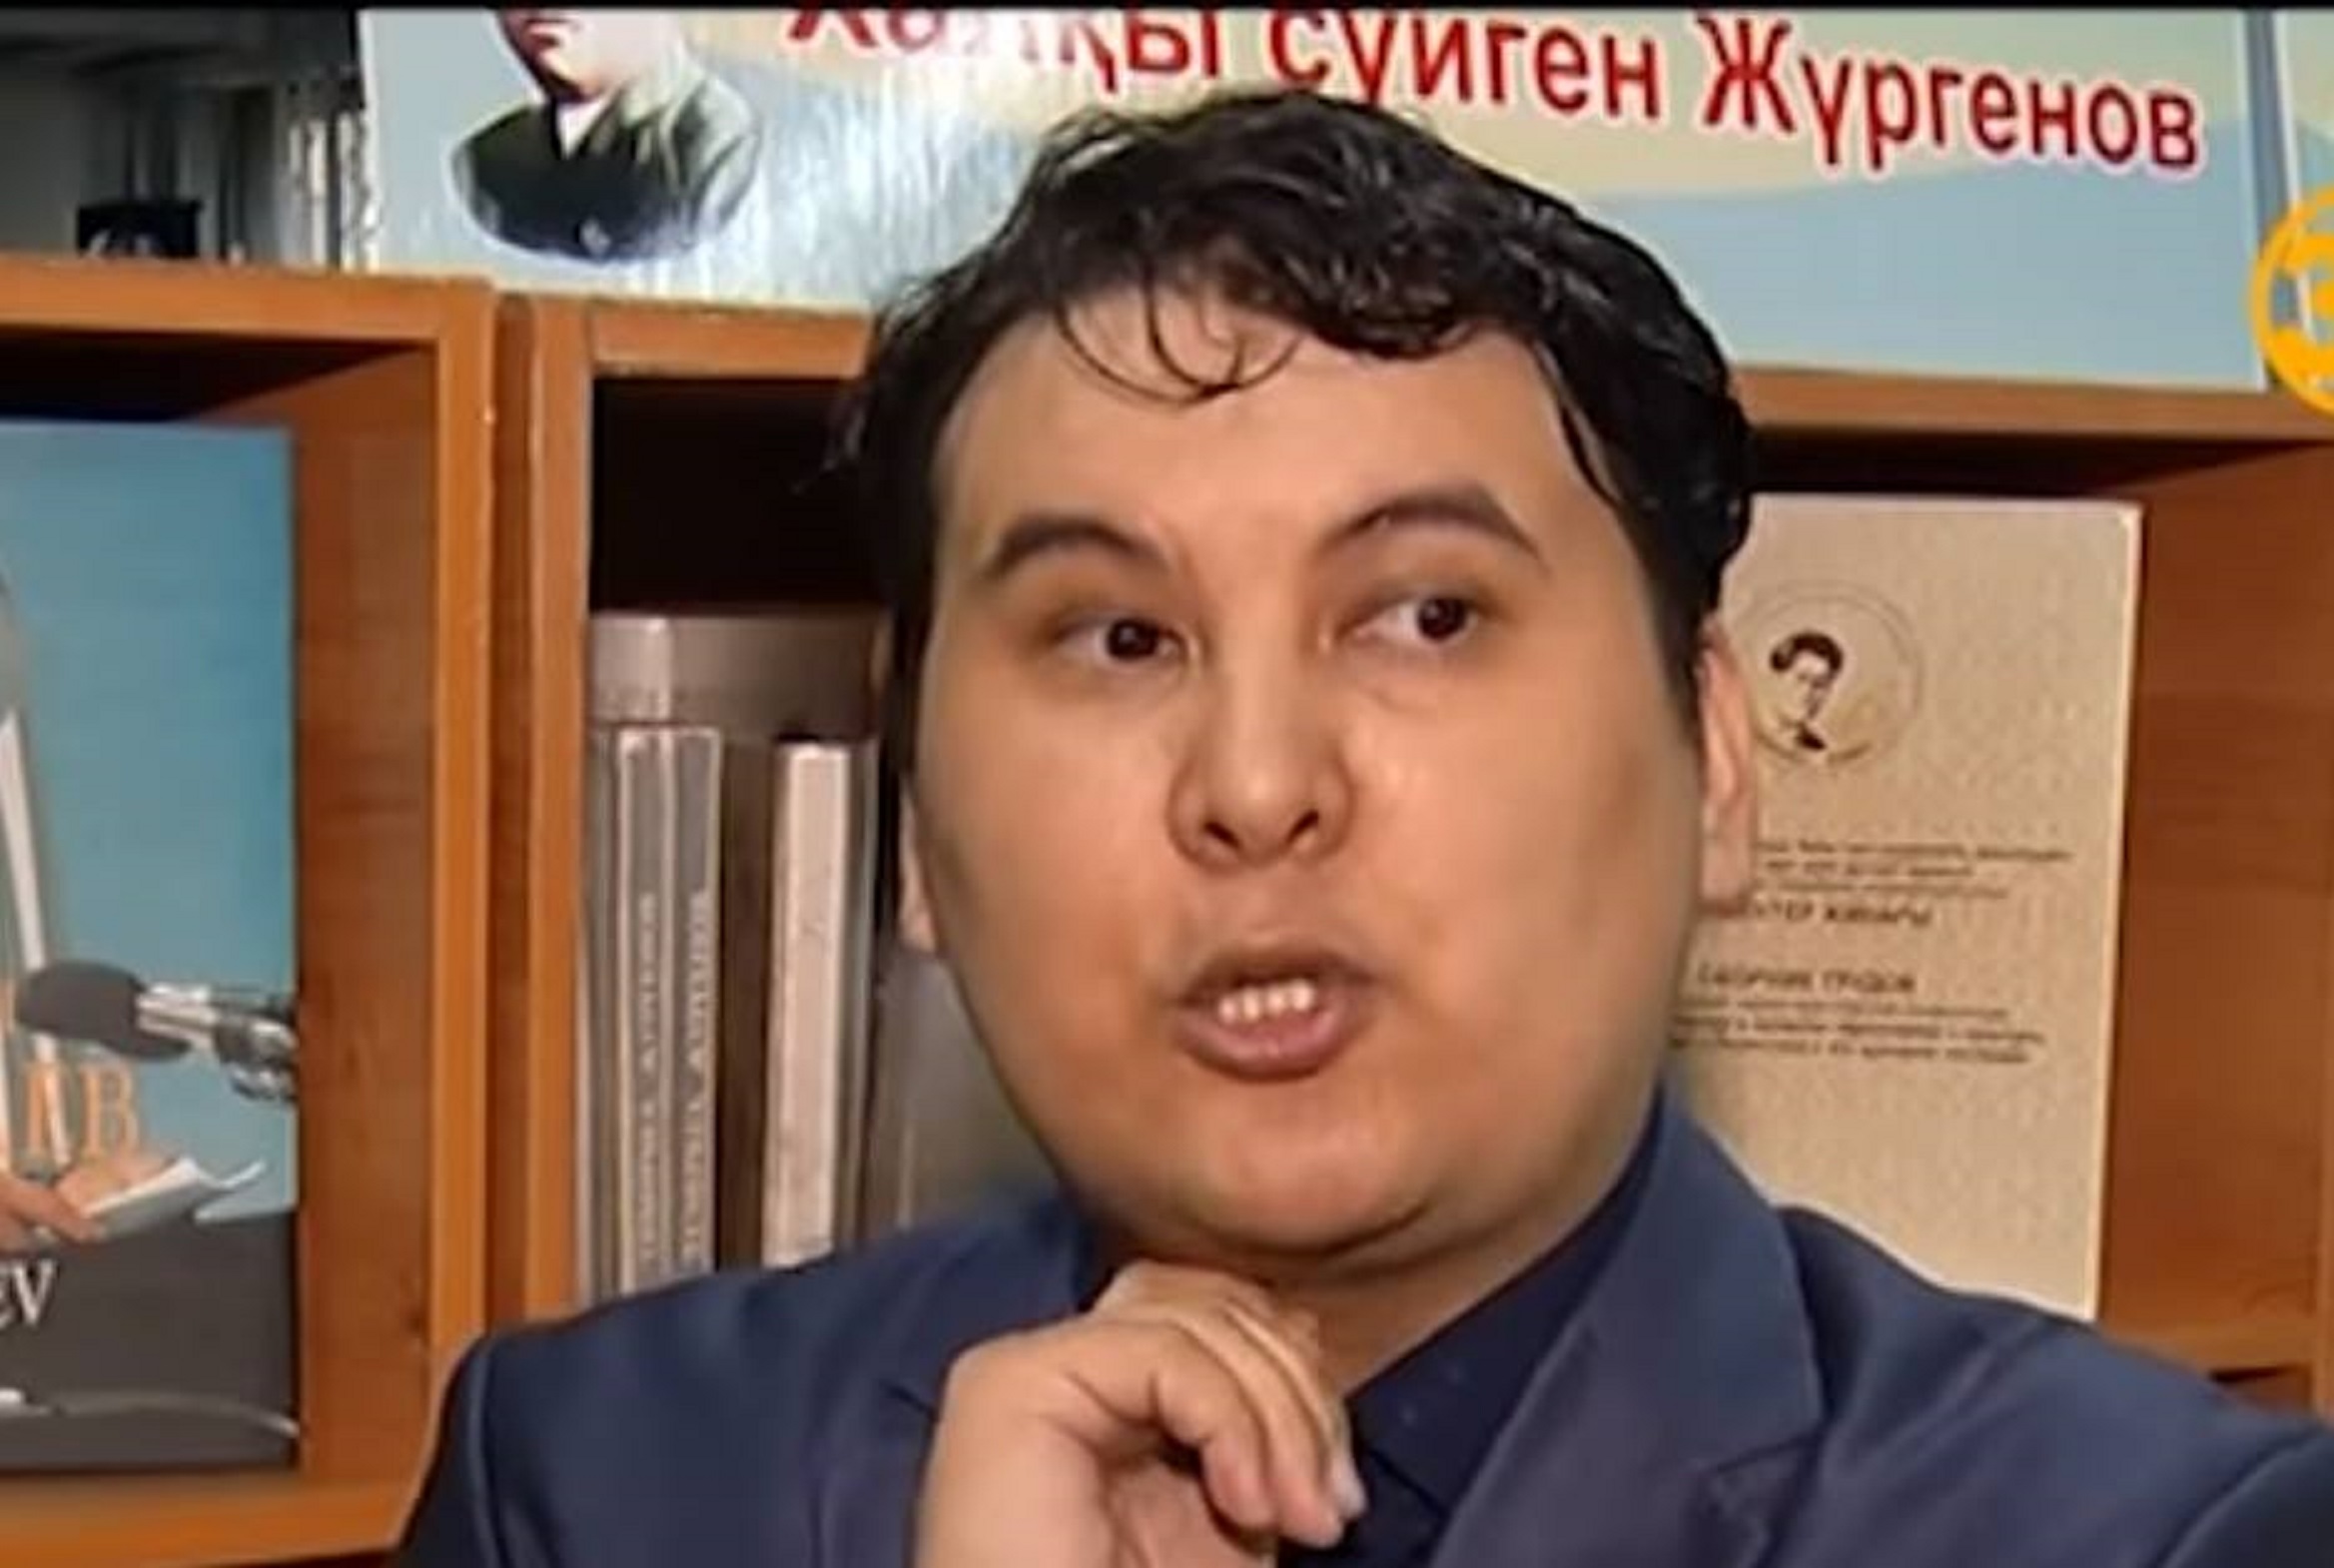 Балтабек Нұрғалиев: "Назарбаевты мақтау? Бұл биліктің тапсырысы емес" (видео)